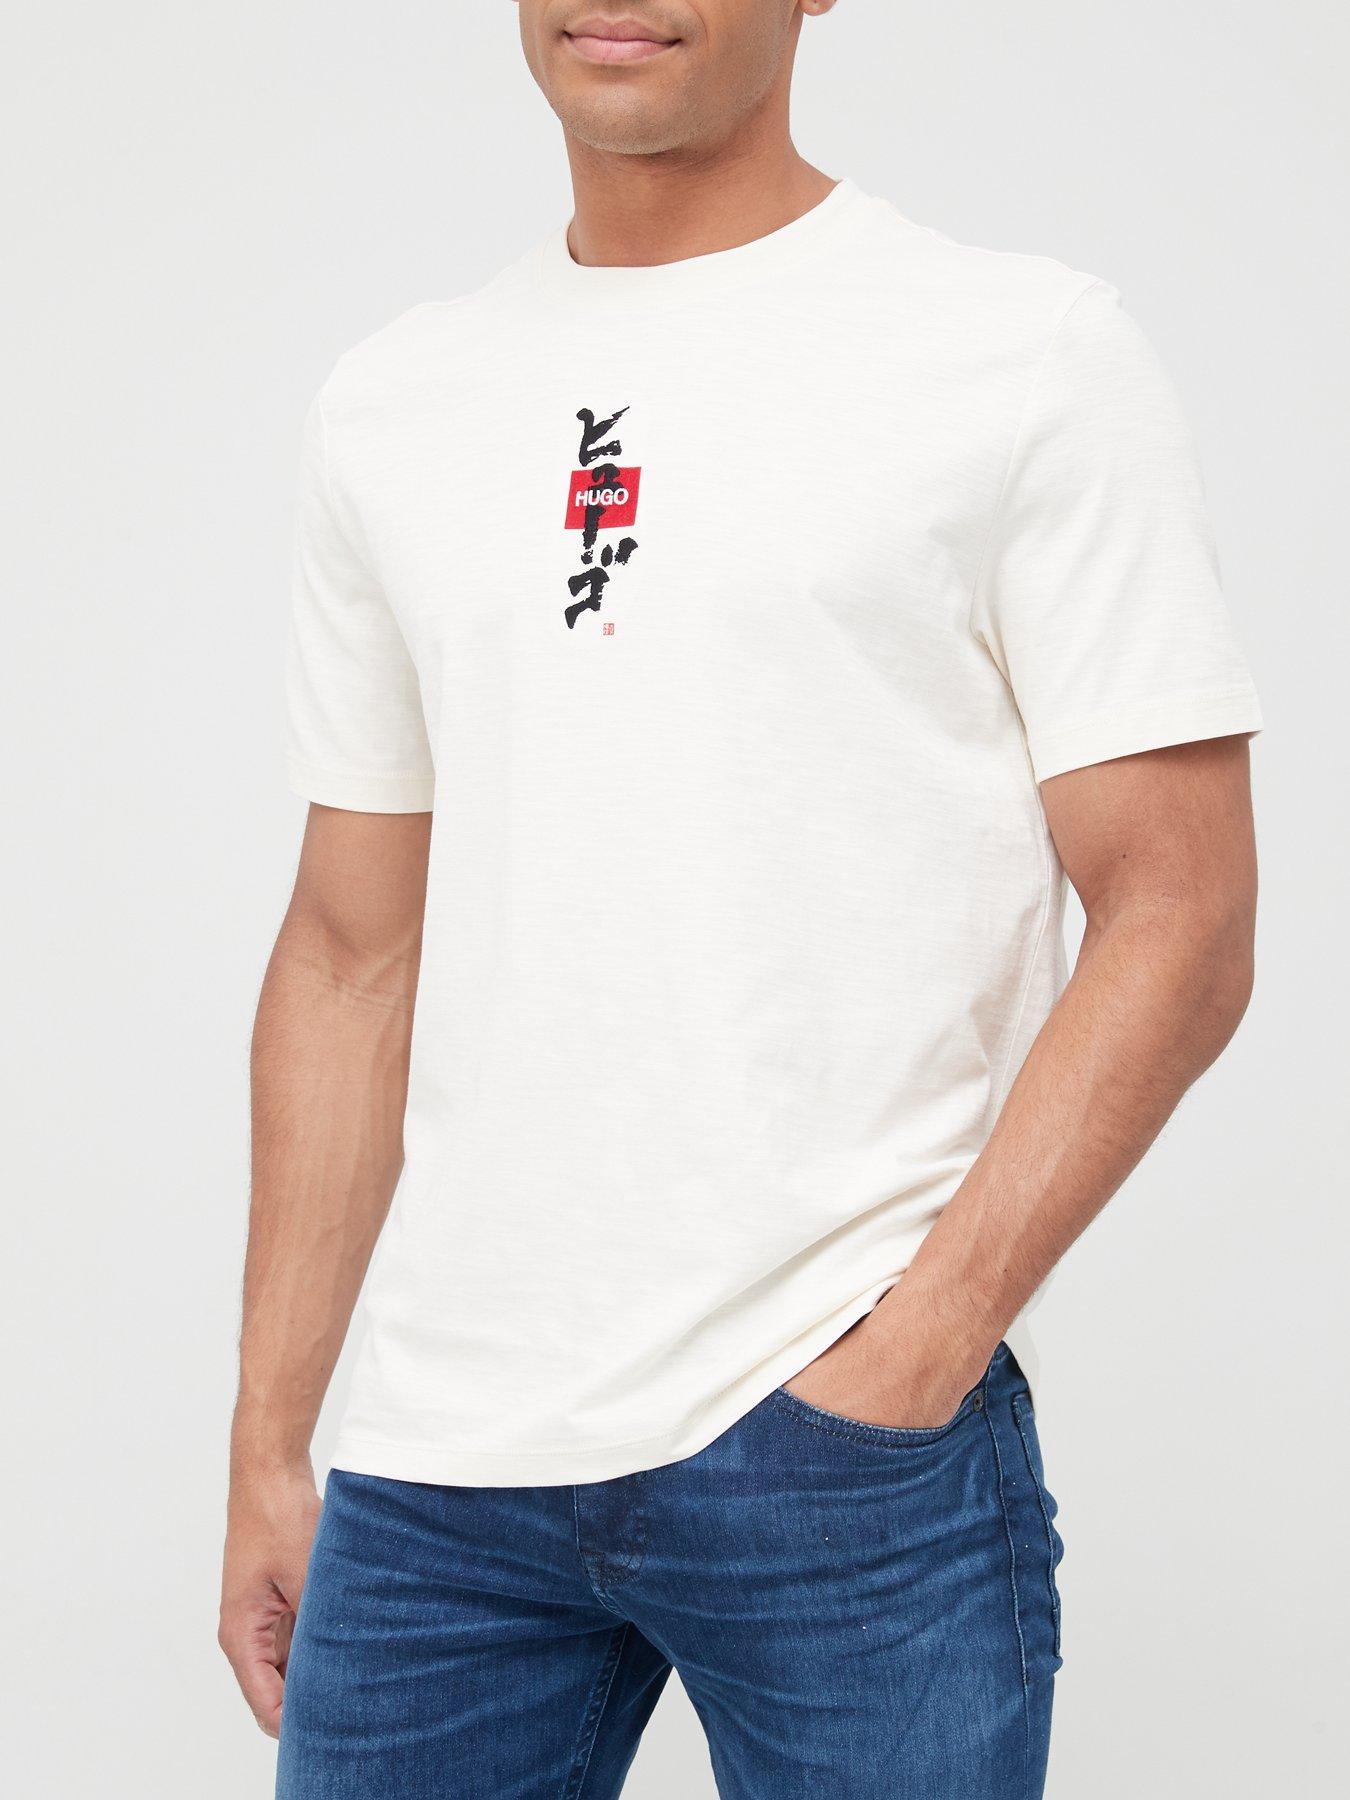  Dasabi Calligraphy Logo T-Shirt - Natural/White